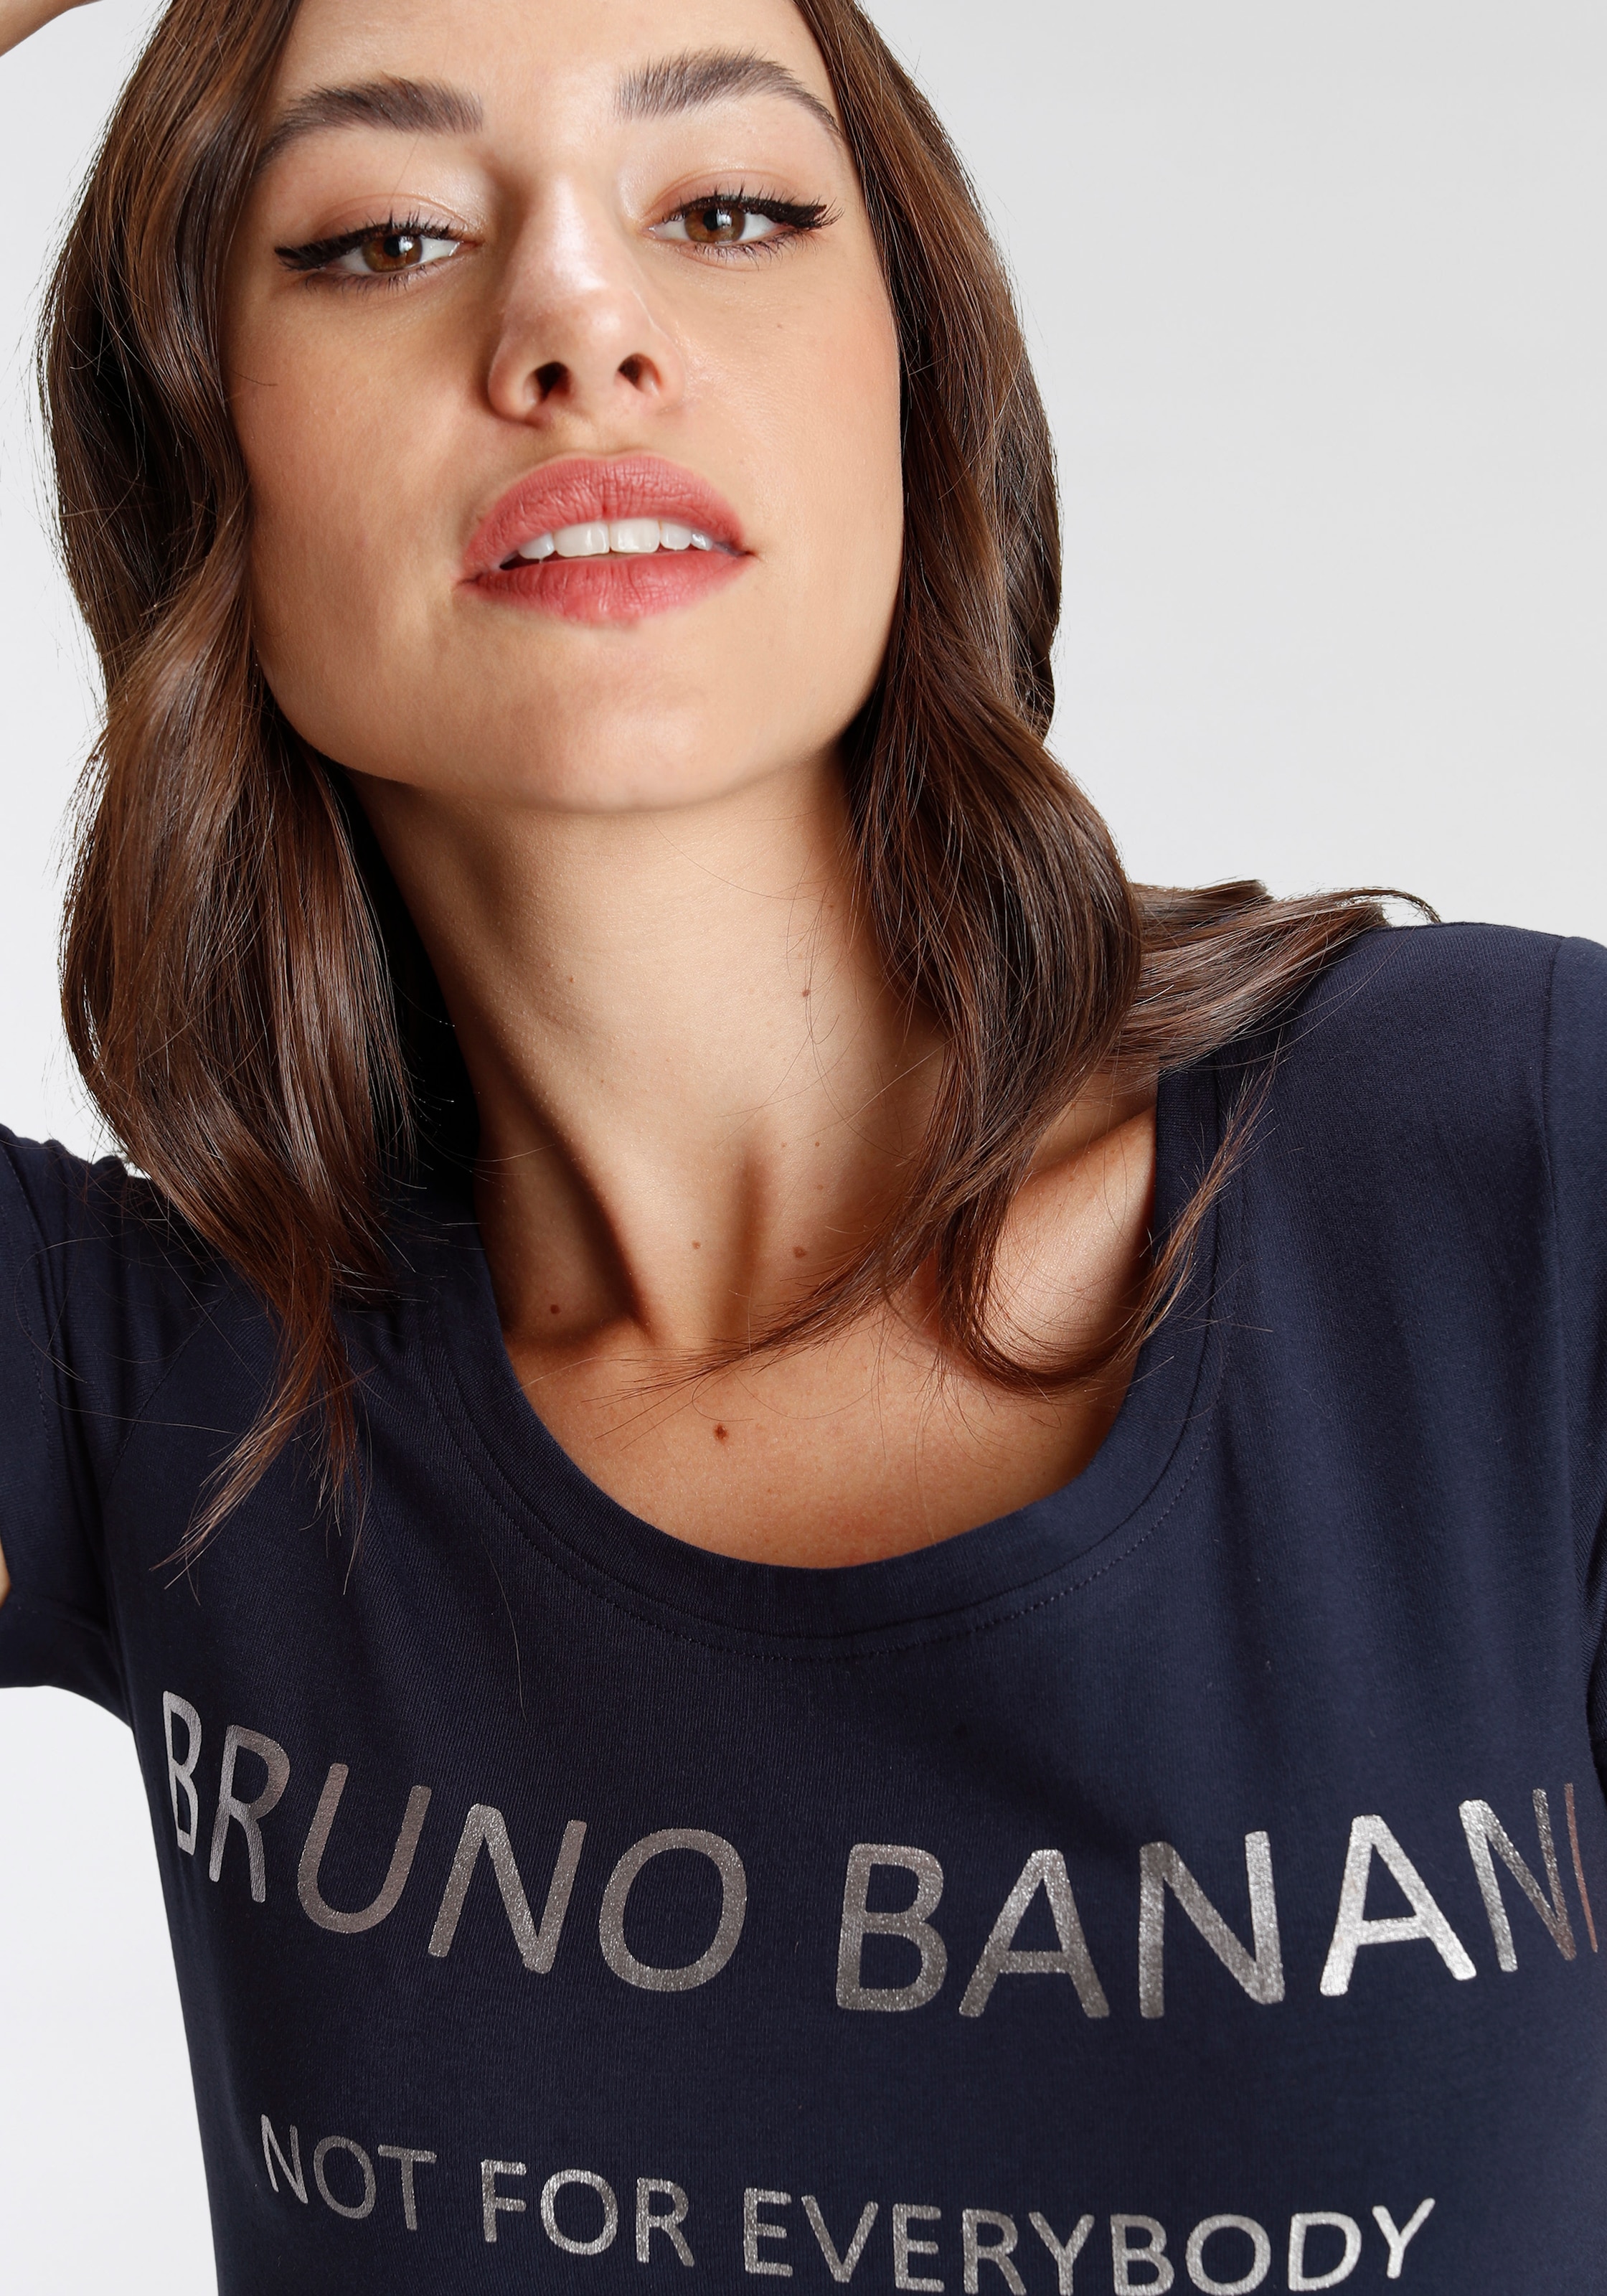 Bruno T-Shirt, OTTO mit Banani KOLLEKTION Logodruck NEUE kaufen bei goldfarbenem online